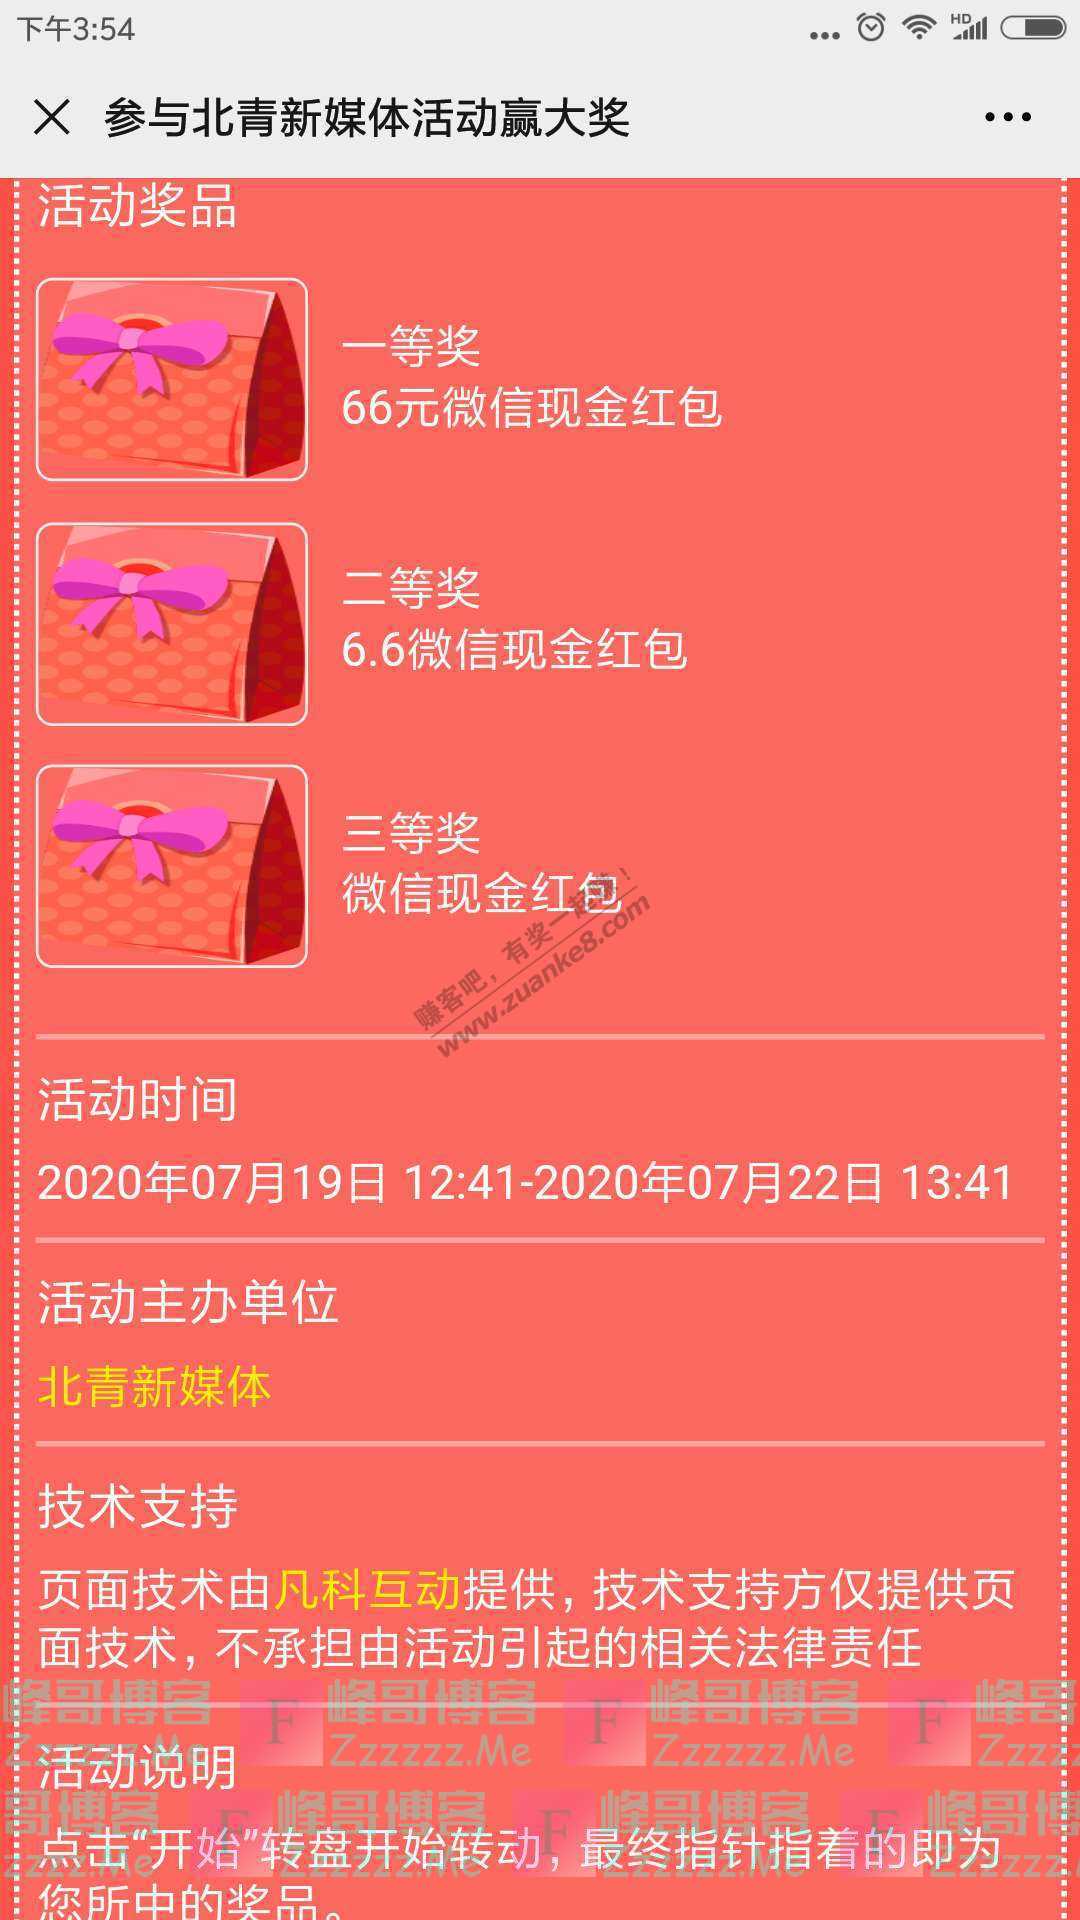 北京青年报【福利】抢个红包，一起去看电影吧（截止7月22日）